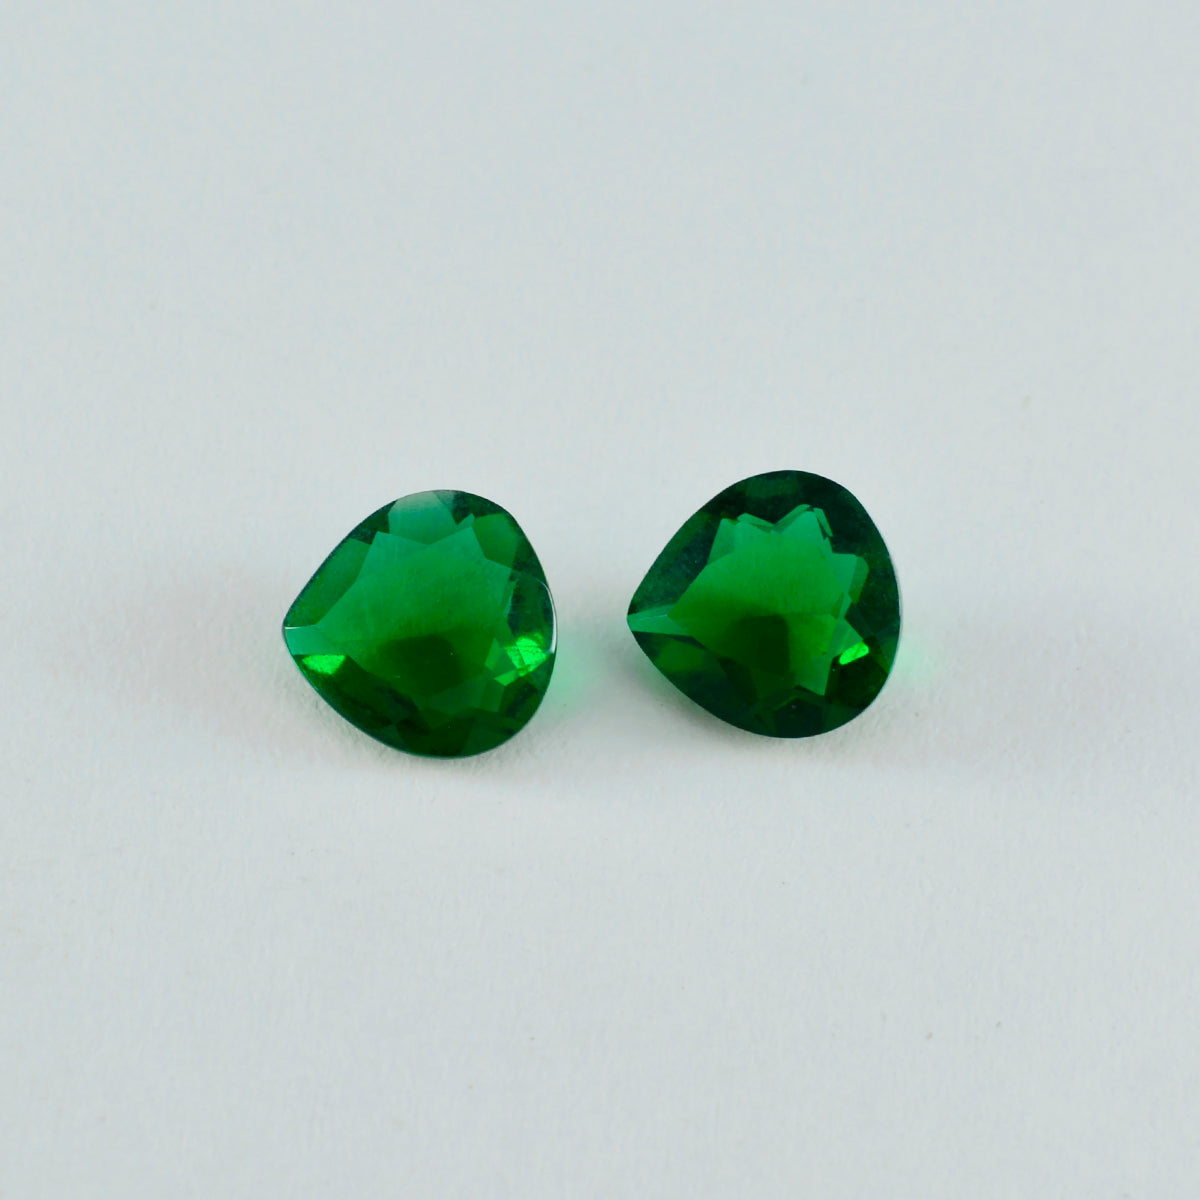 Riyogems 1pc vert émeraude cz facettes 7x7mm forme de coeur belles pierres précieuses de qualité